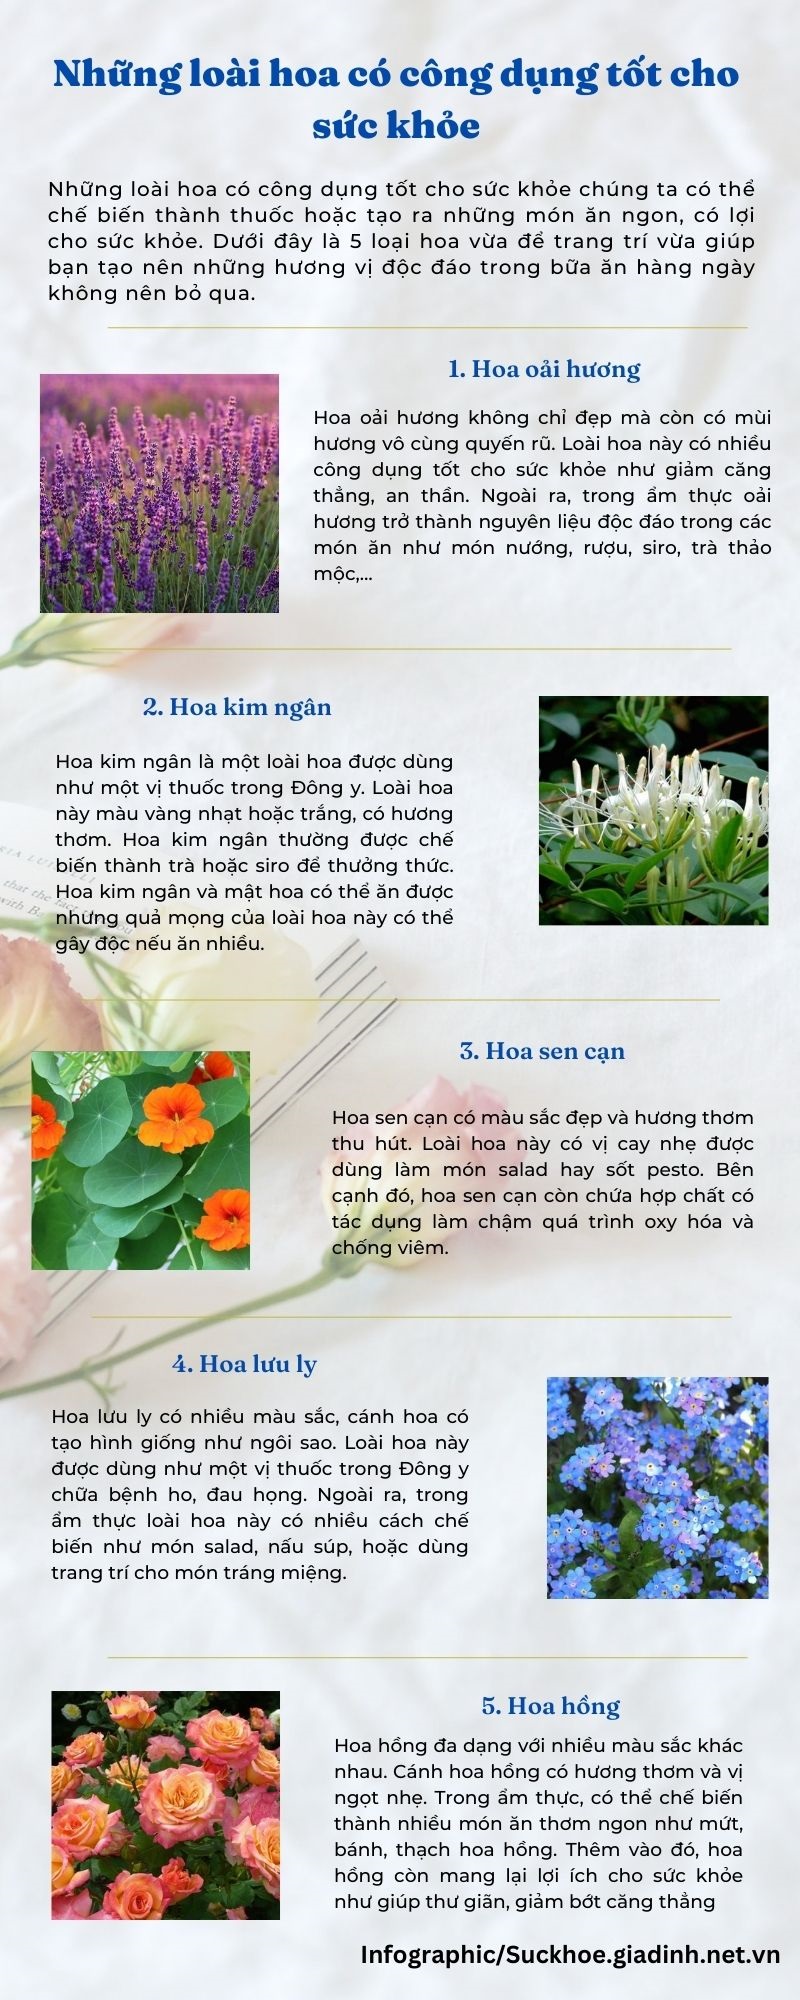 Những loài hoa có công dụng tốt cho sức khỏe